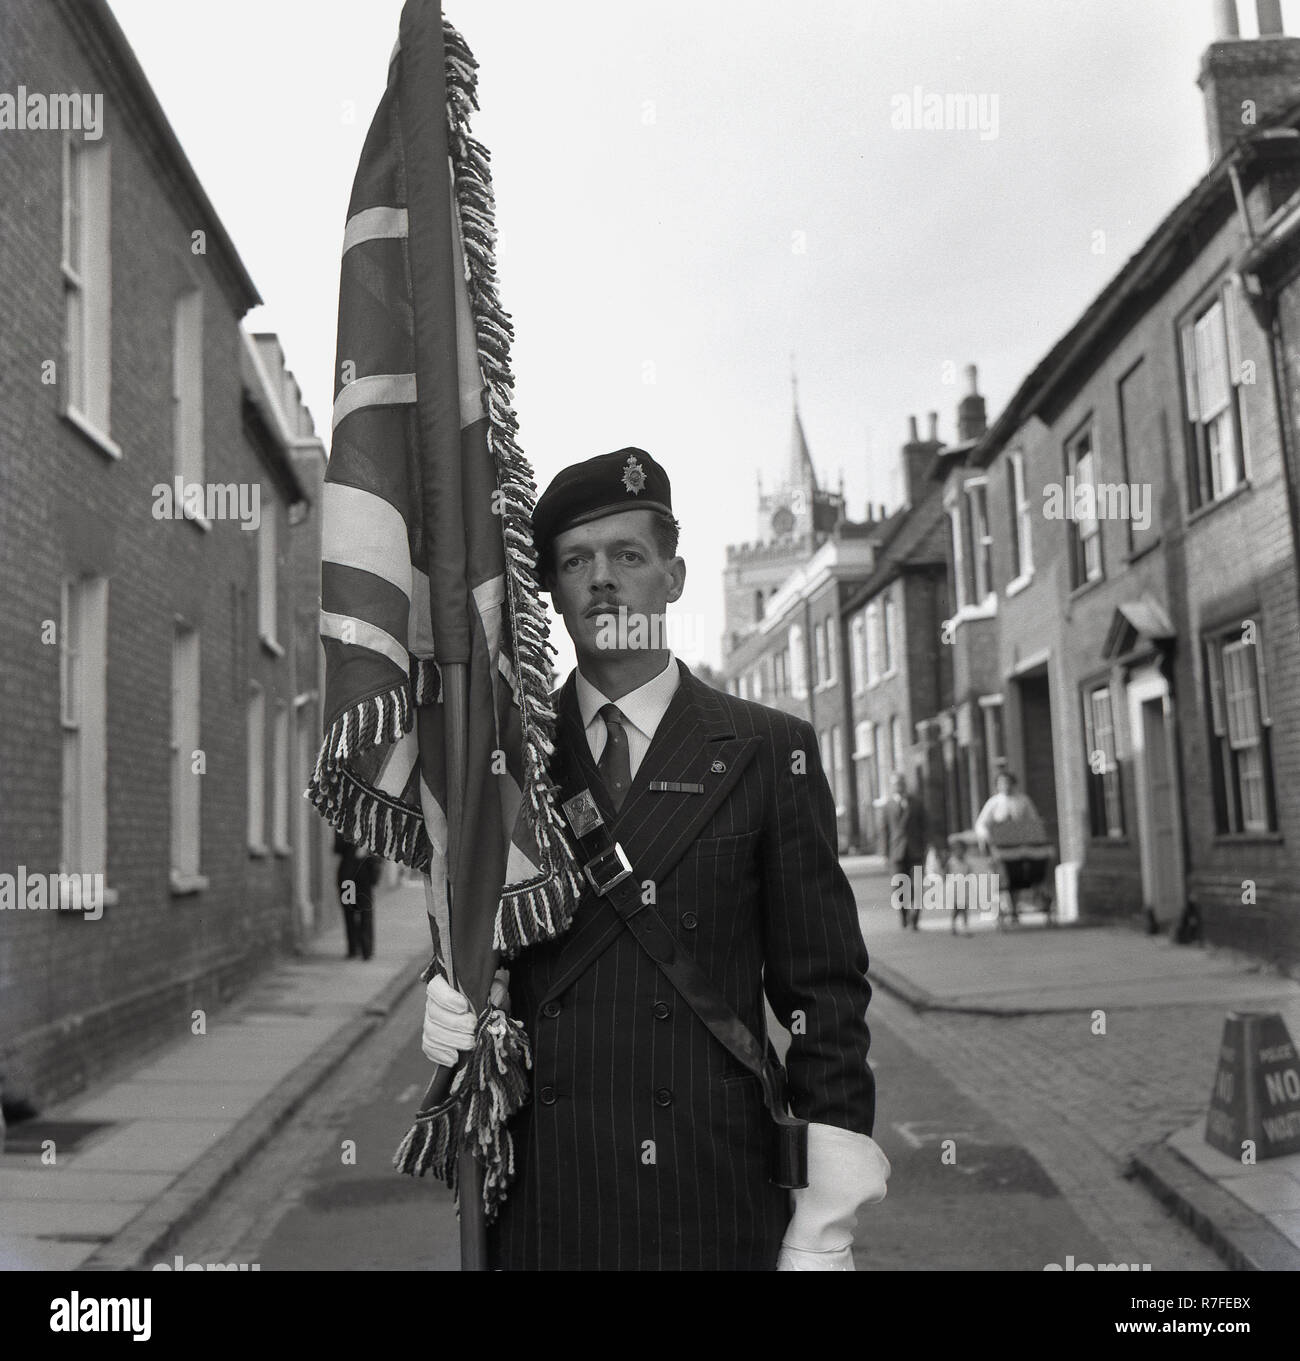 1964, défilé, un homme en costume rayé-pin et portant un béret de style militaire avec un insigne, et portant des gants blancs, debout dans une rue latérale, la tenue d'un poteau avec un drapeau, Aylesbury, Buckinghamshire, Angleterre, RU Il est sur le point de prendre part à un défilé pour célébrer la bataille d'Angleterre, des villes de marché en anglais en cette ère de se rappeler les sacrifices de l'armée britannique et du public au cours de la SECONDE GUERRE MONDIALE. Banque D'Images